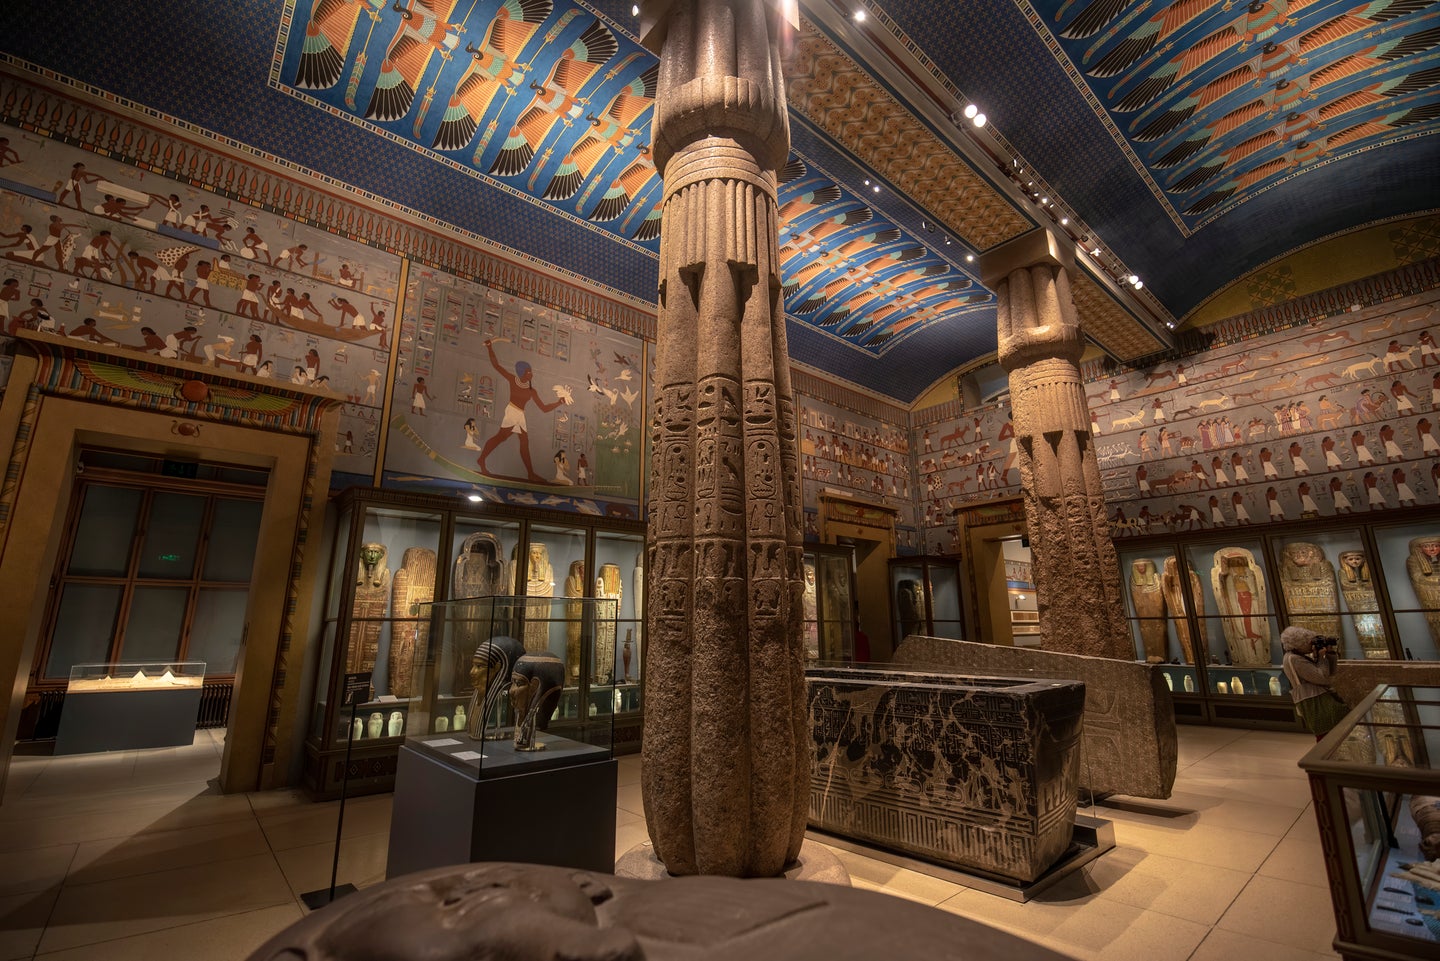 The Egyptian hall